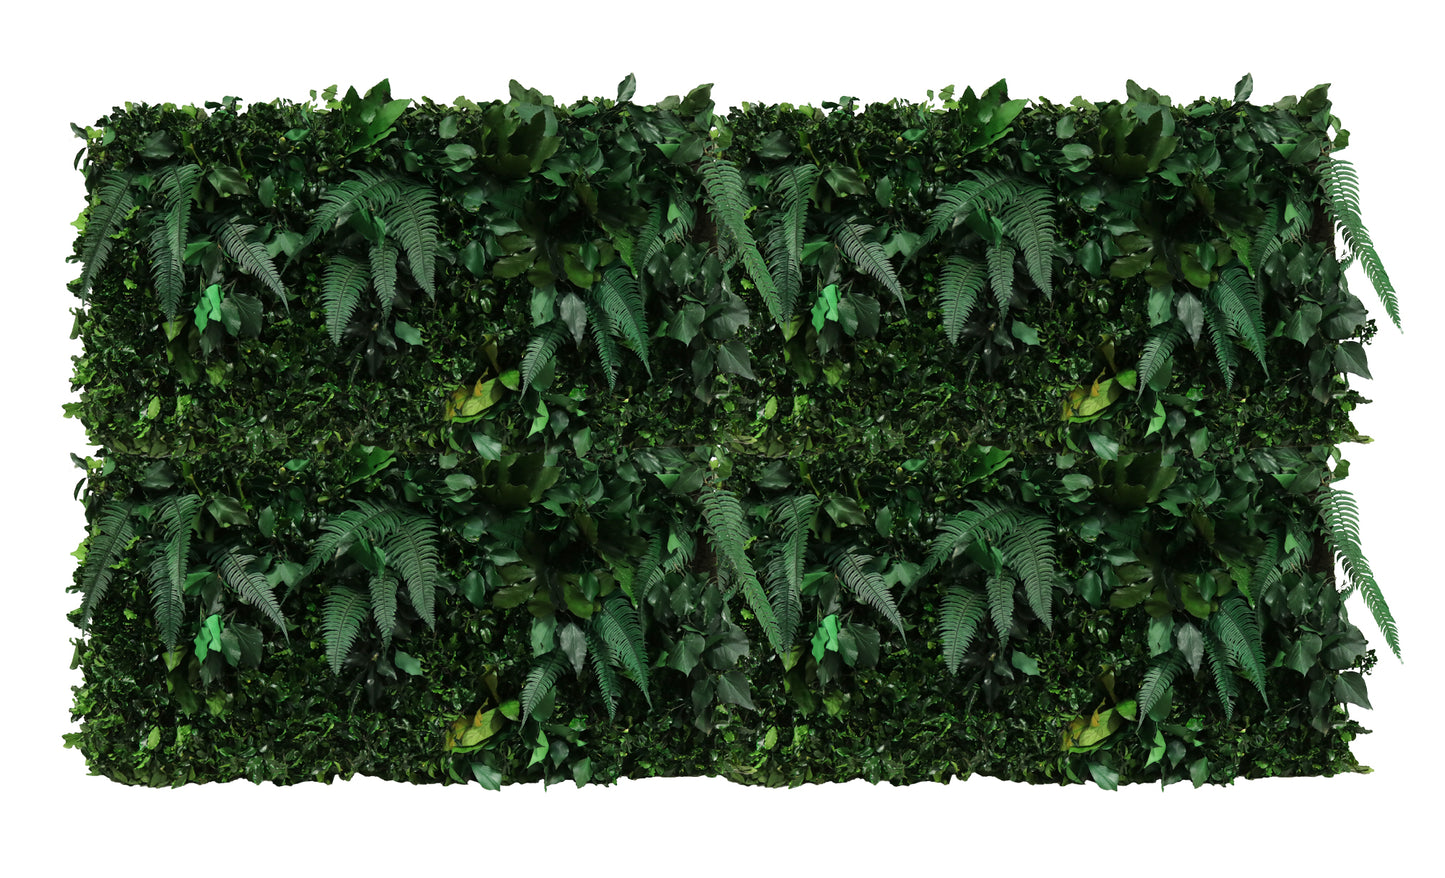 Jungle Paneele DIY I Deine grüne Wand aus echten konservierten Pflanzen  ohne gießen und ohne Pflege